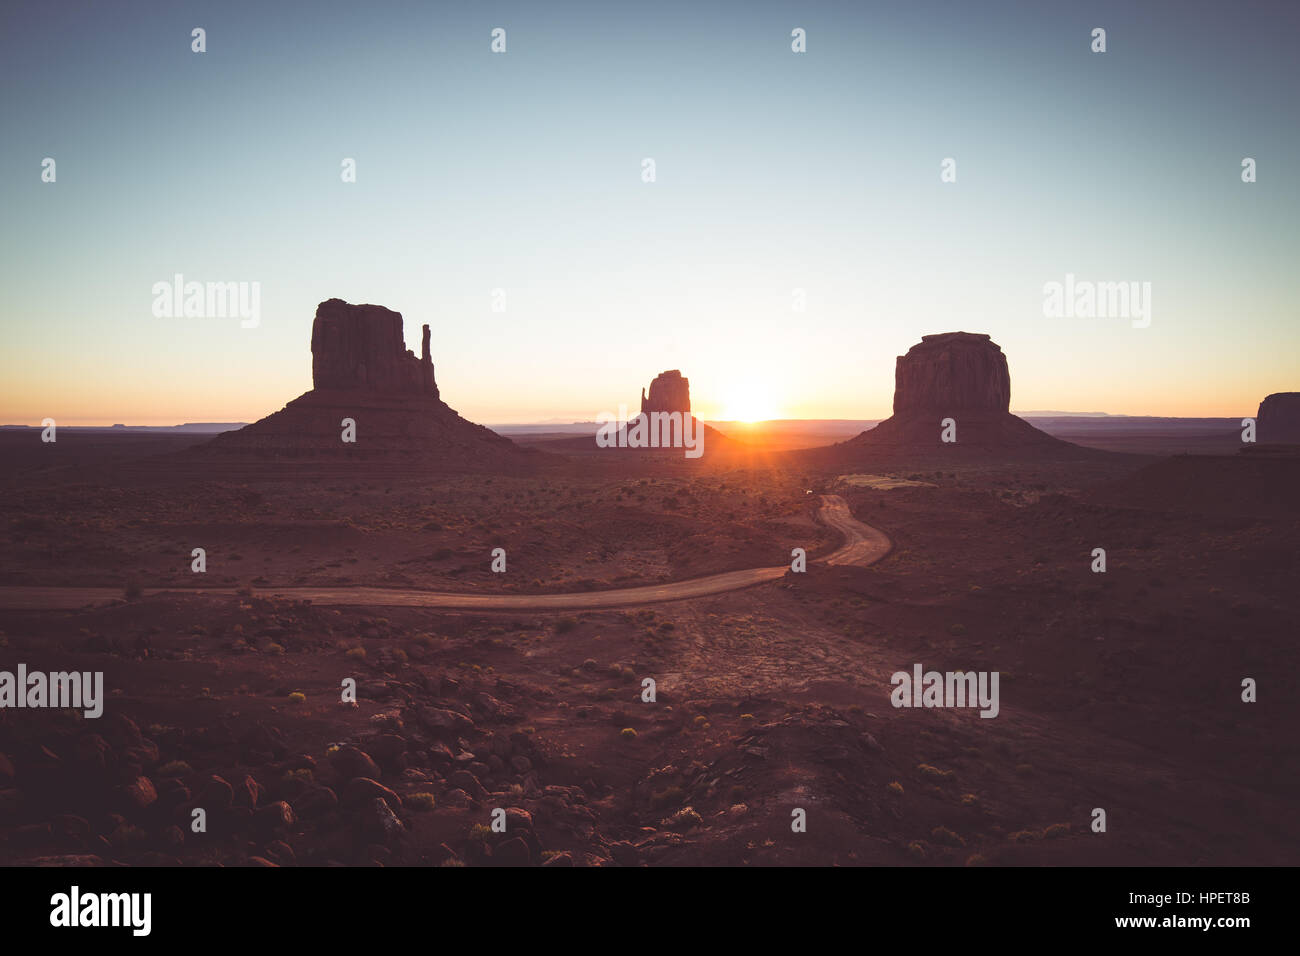 Visualizzazione classica di scenic Monument Valley con il famoso mezzoguanti e Merrick Butte al golden sunrise in estate con retro vintage filtro, Arizona, Stati Uniti d'America Foto Stock